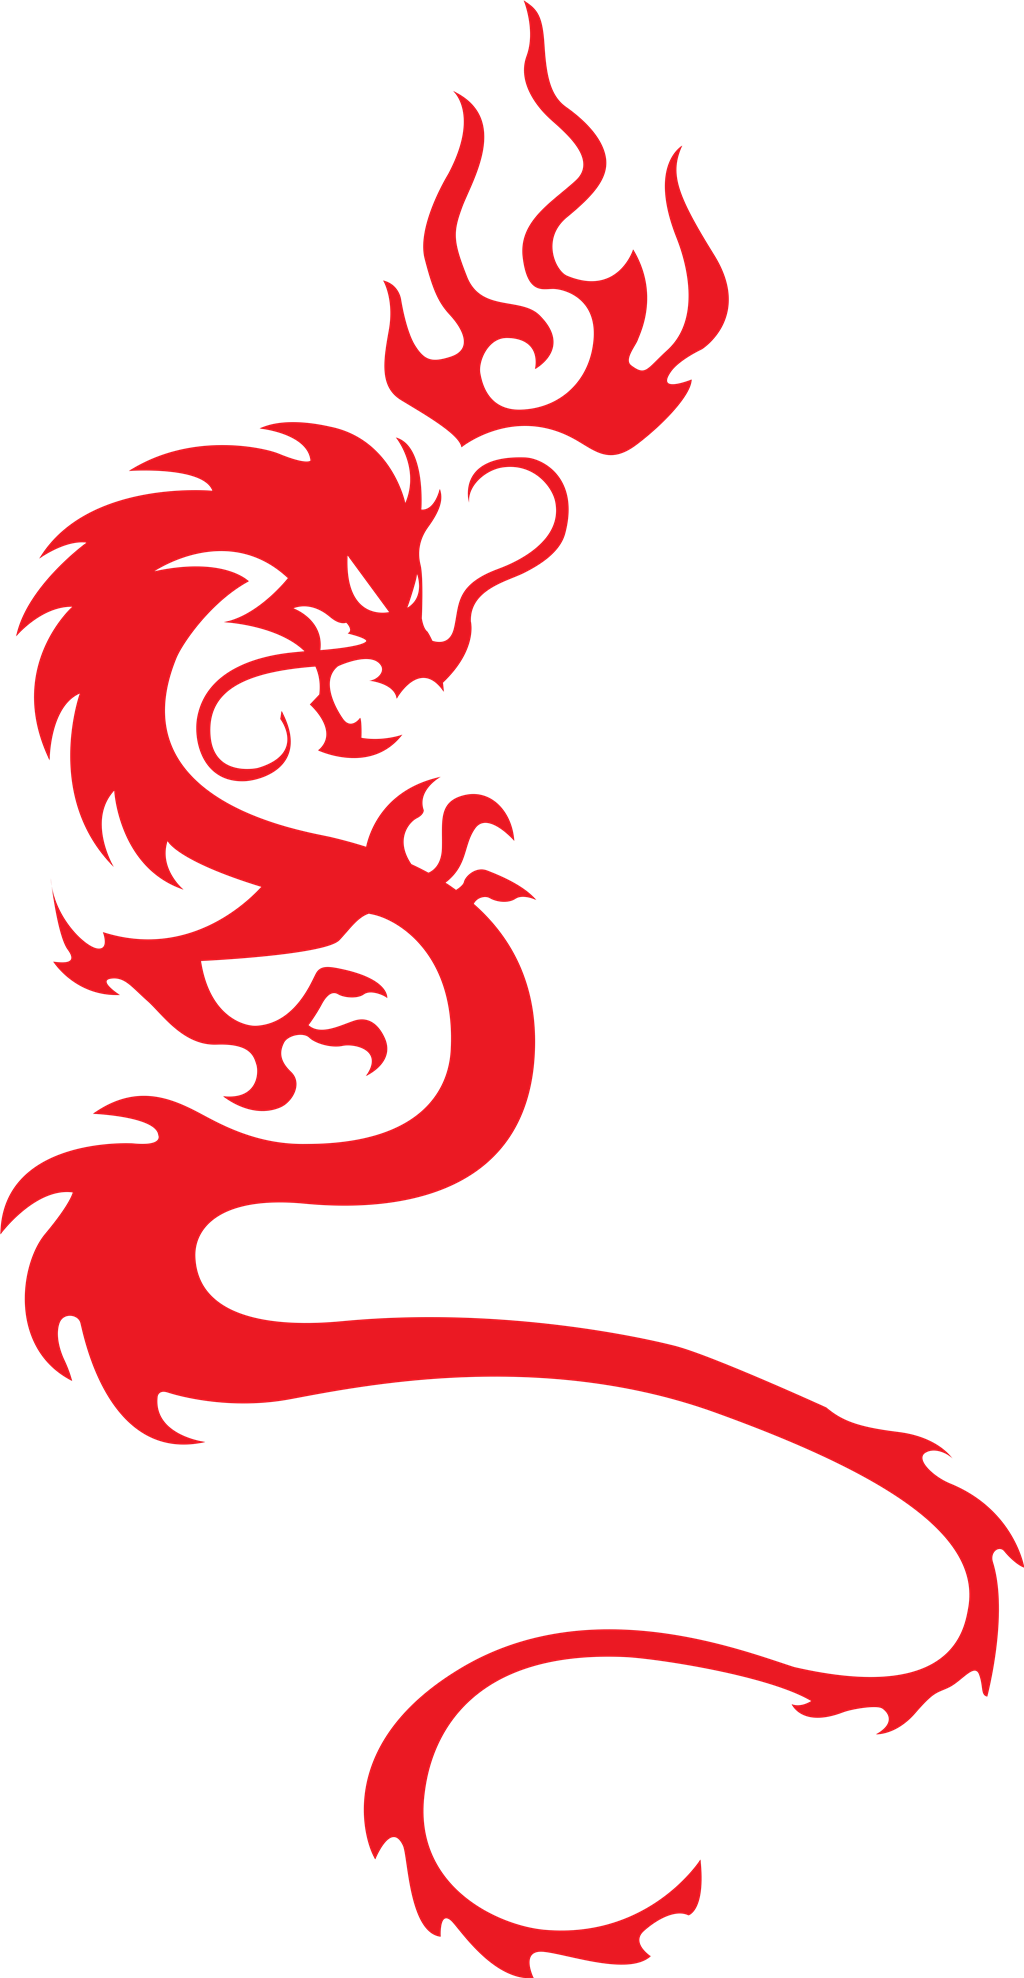 Red Dragon logotype, transparent .png, medium, large